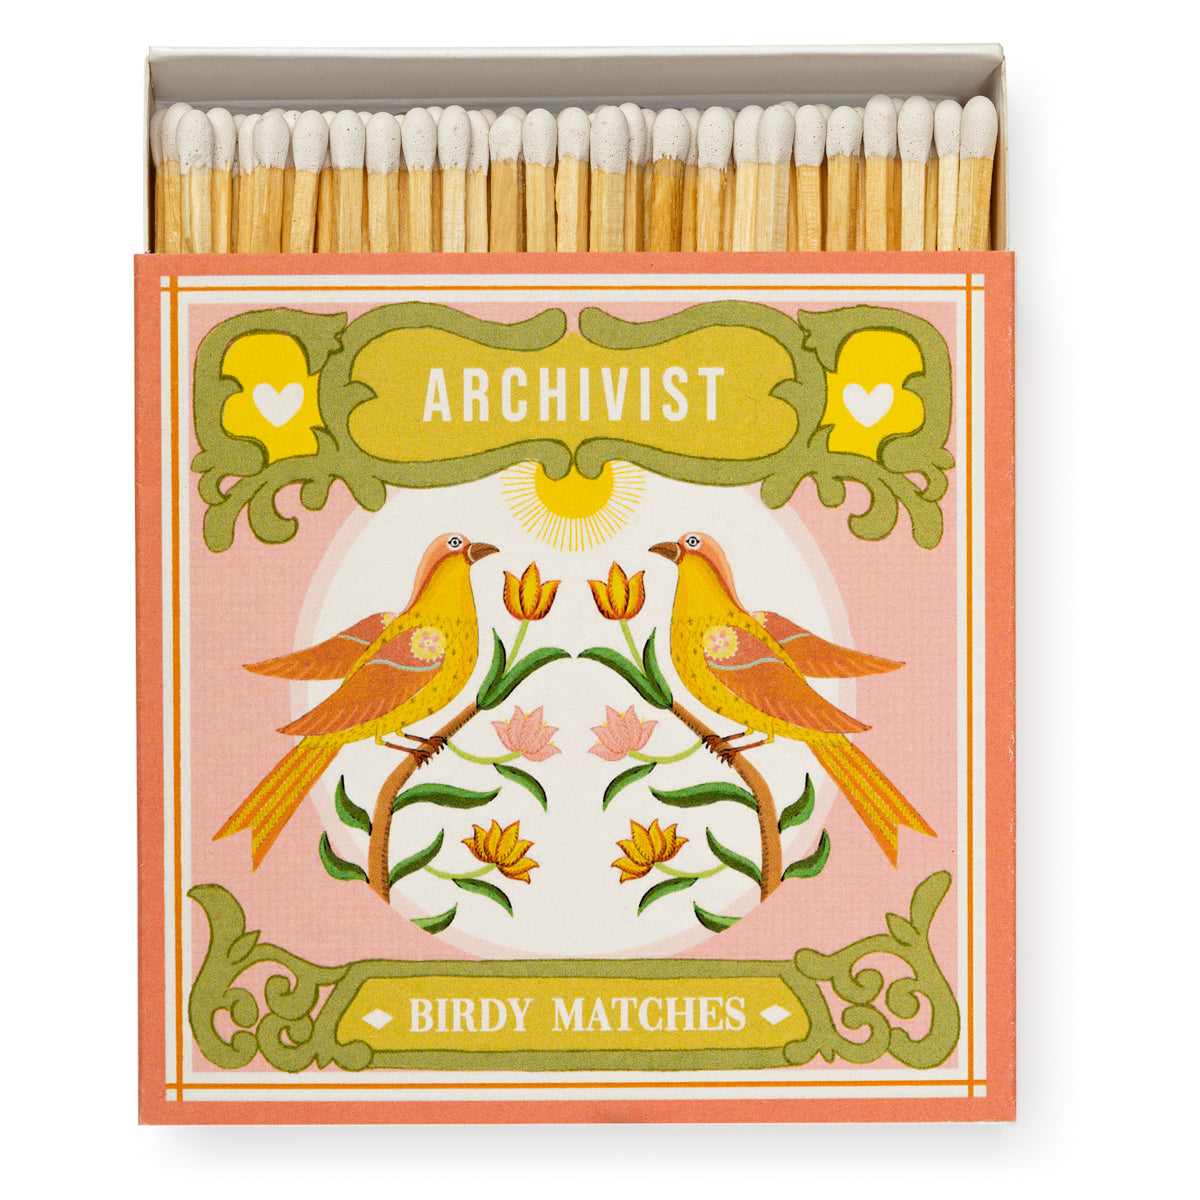 Archivist Luxury Matches Ariane's Birdy Matches | Archivist | Miss Arthur | Home Goods | Tasmania